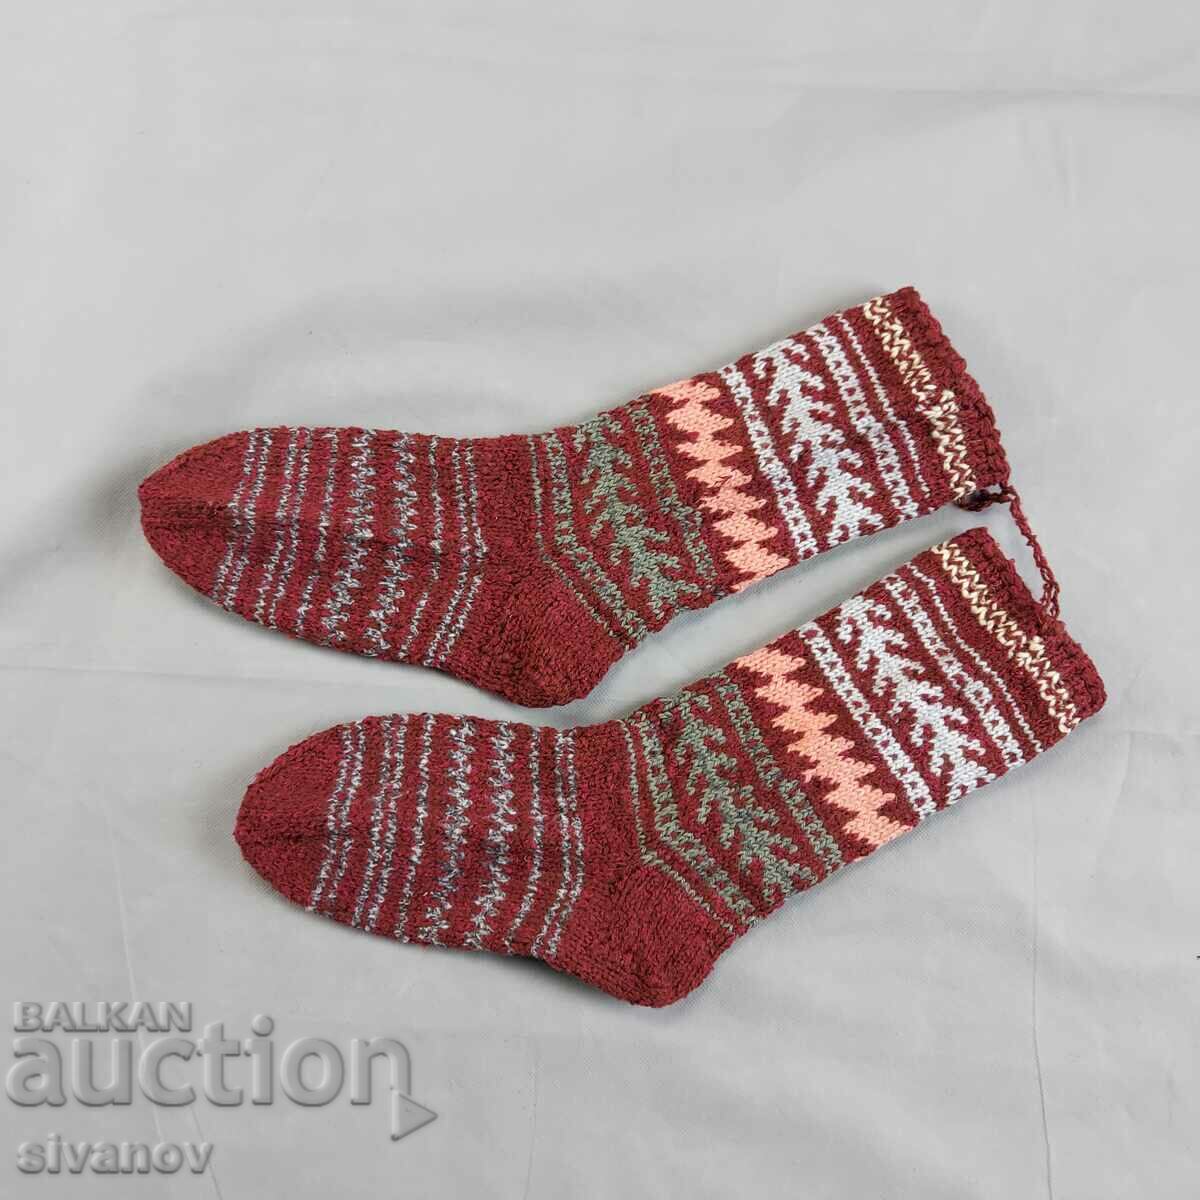 Μάλλινες κάλτσες για έθνικ φολκλόρ φορεσιά #2356